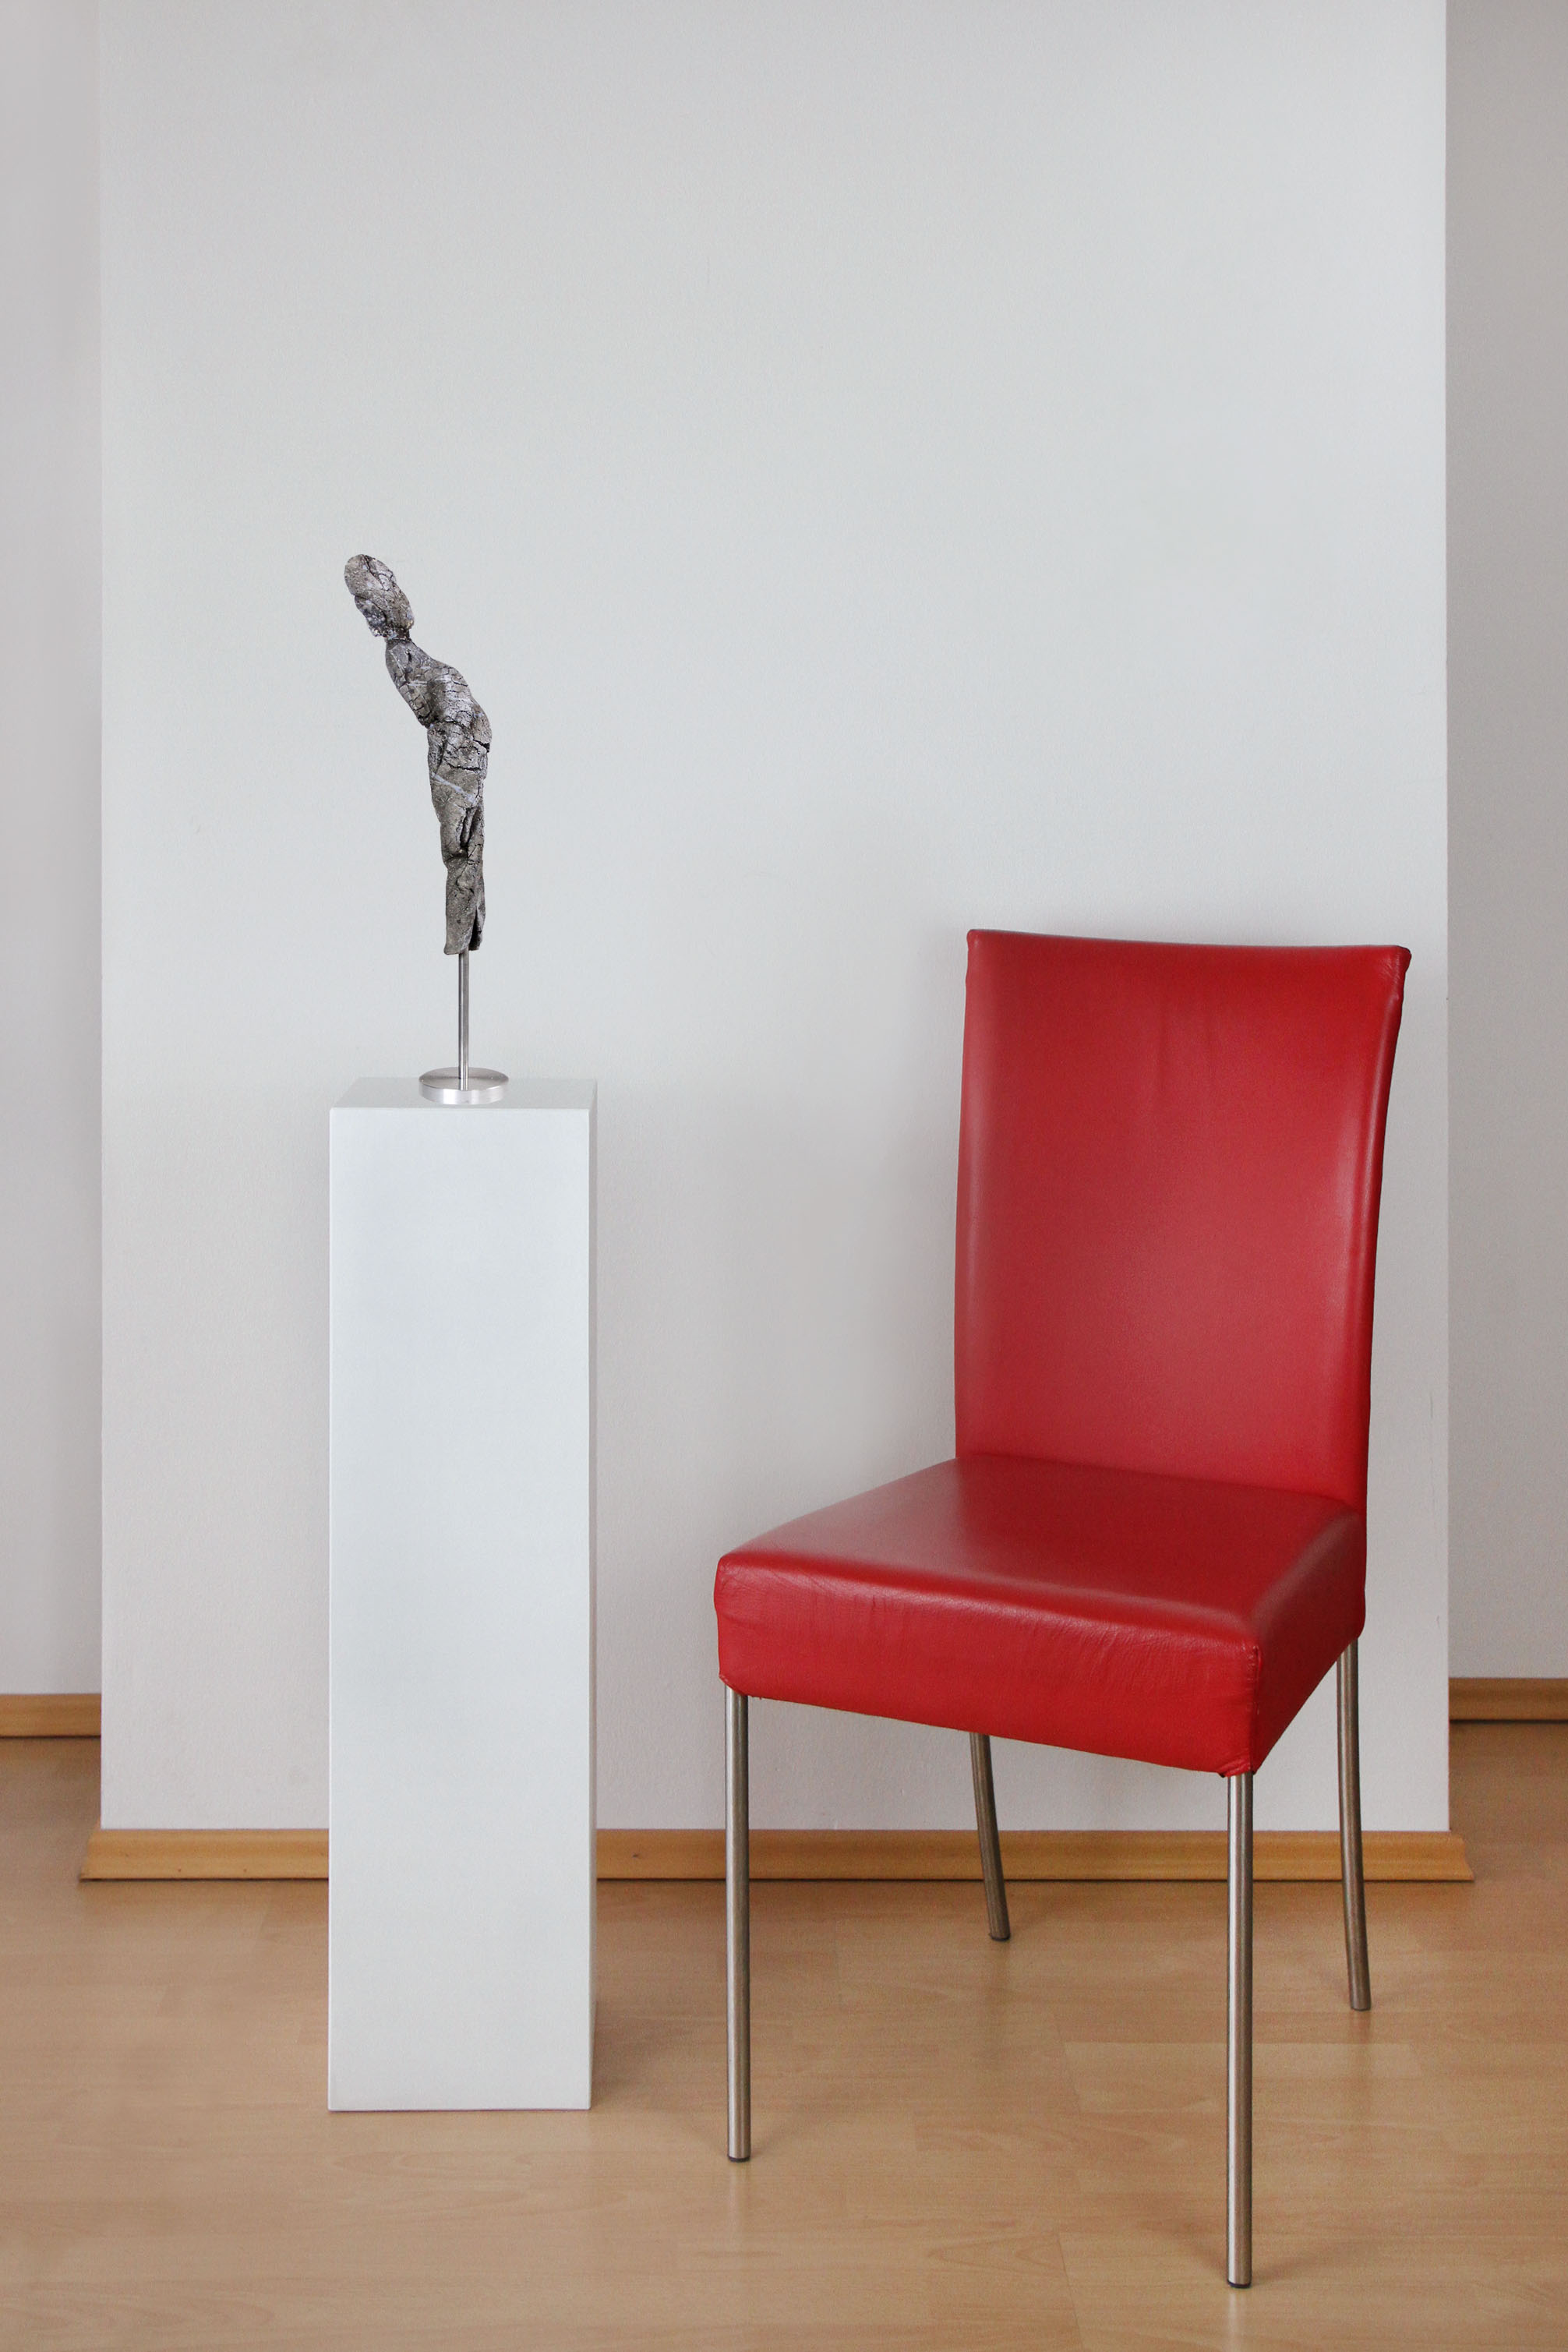 Zeitgenössische Skulptur, Ilona Schmidt: "Figur 2 vom Reigen" (A)